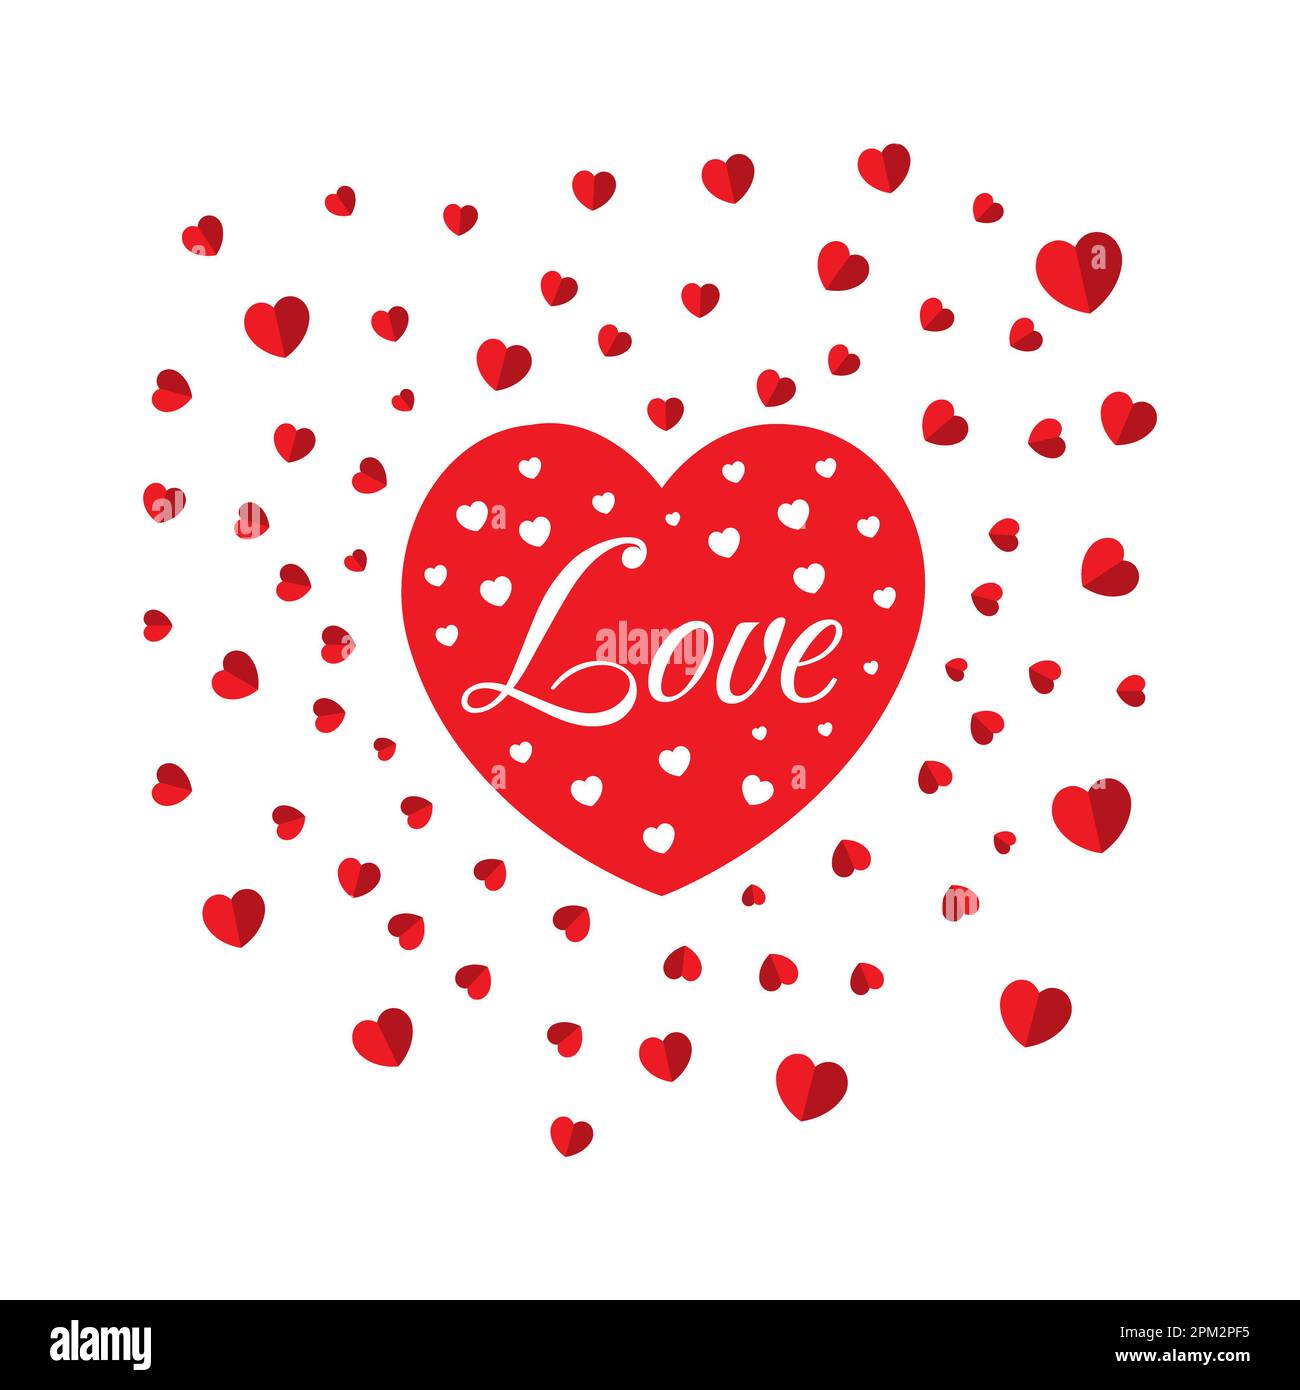 Love Red Heart with Hearts Hintergrundmusik für jedes romantische Design, Hintergrund zum Valentinstag, Red Heart with Love and Hearts Stockfoto